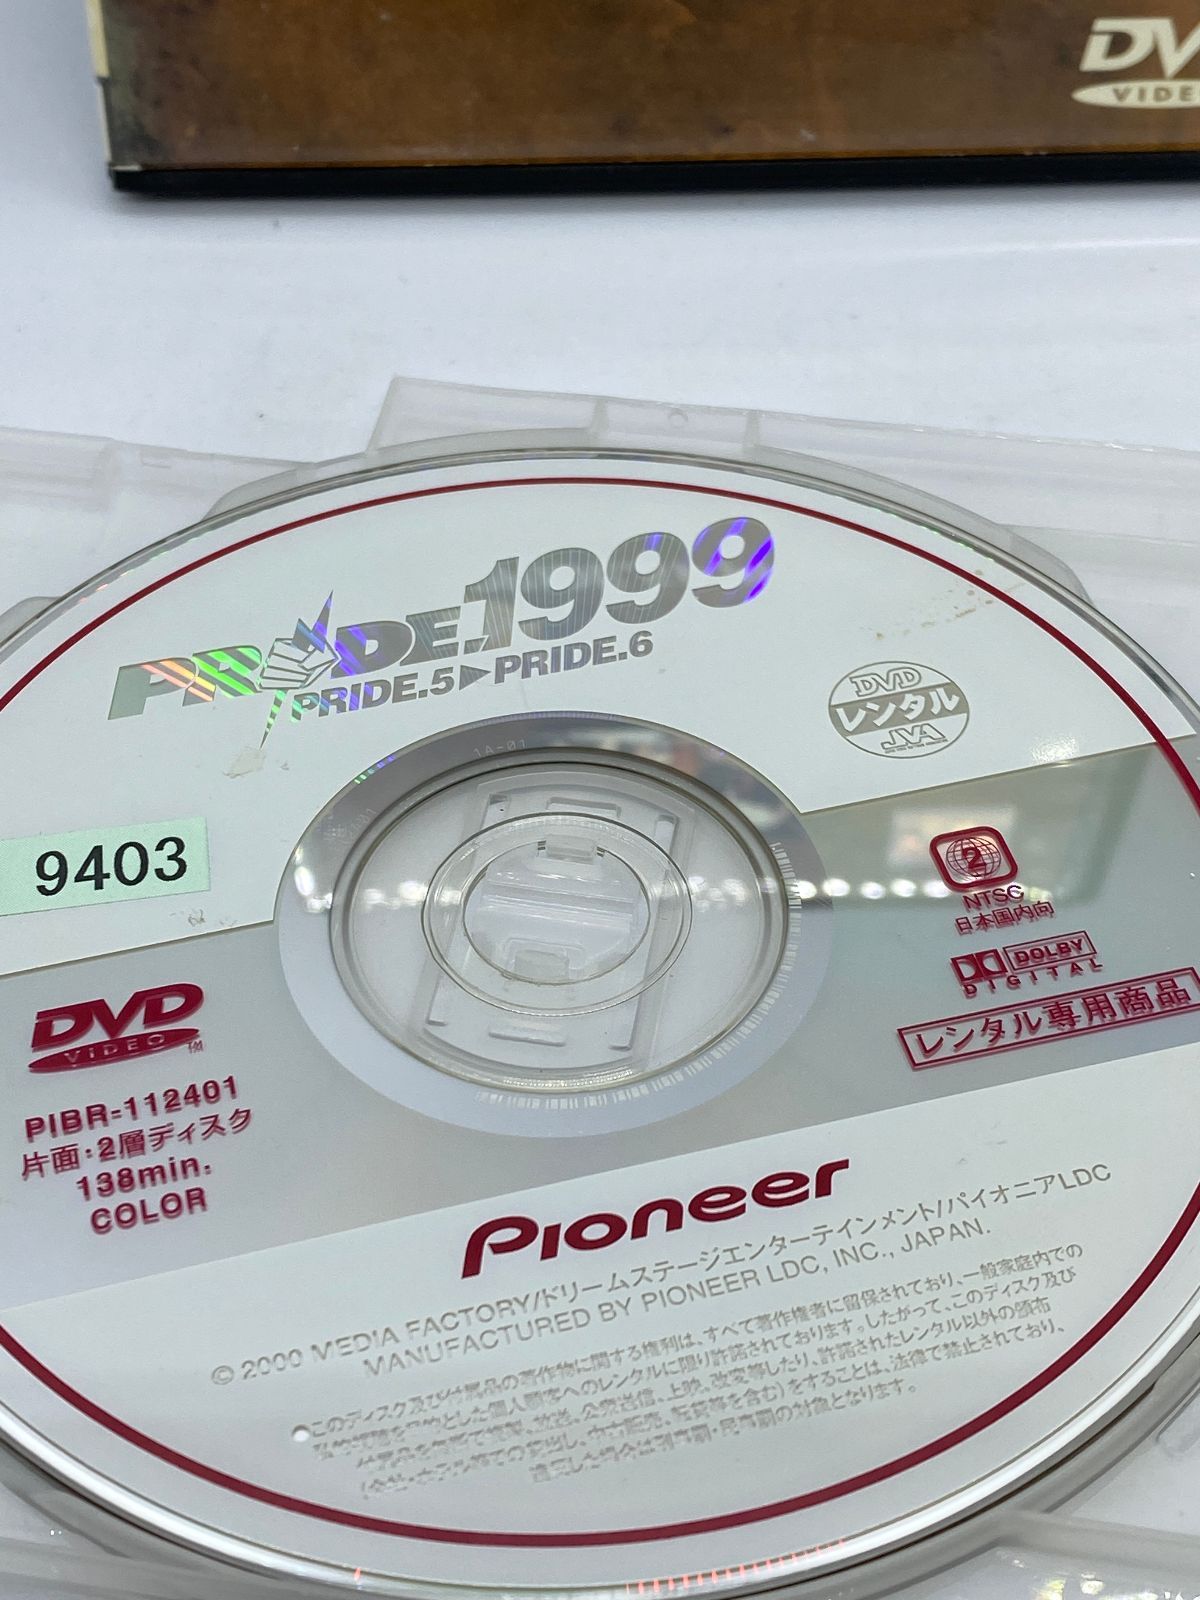 プライド1999 PRIDE.5-PRIDE.6 DVD レンタル落ち - メルカリ